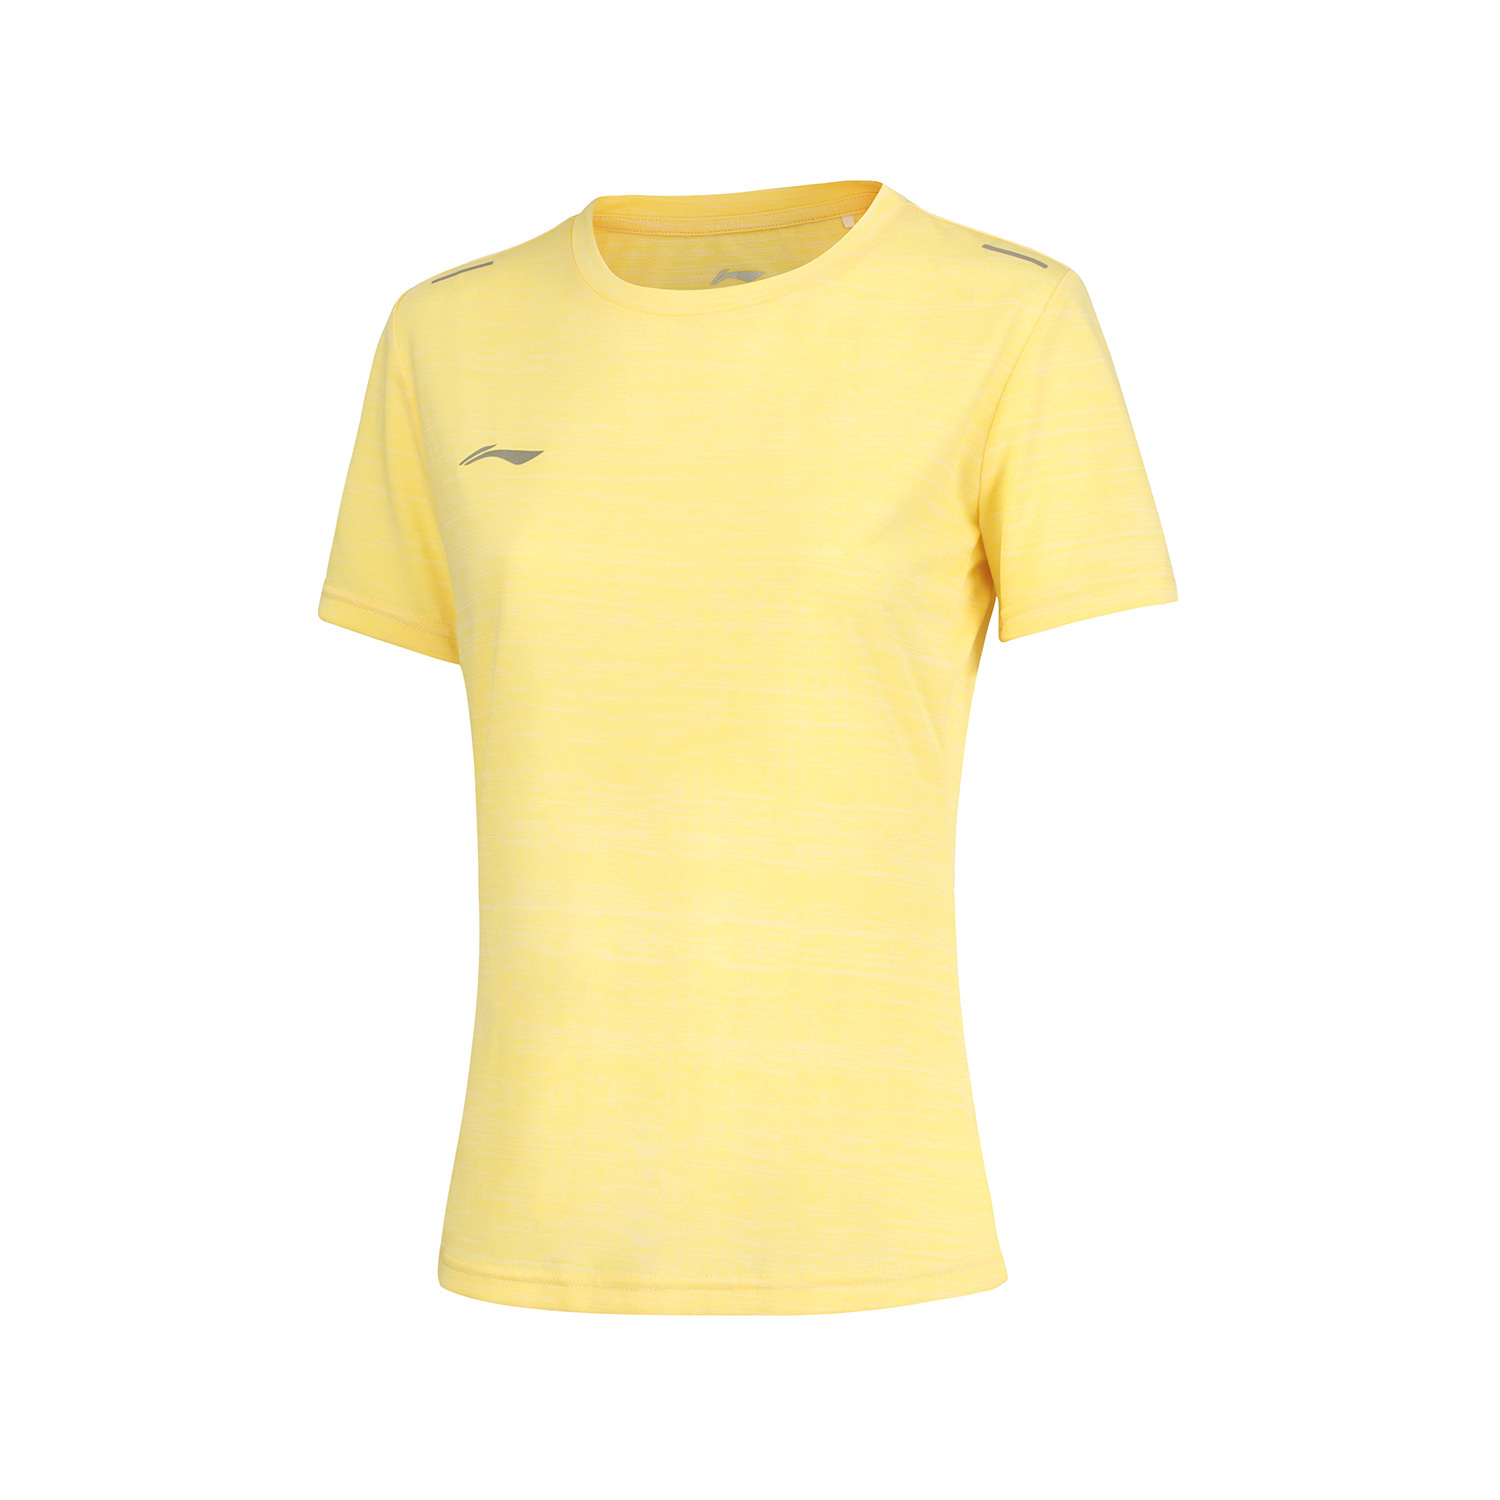 LI-NING 李宁 团购系列 女 短袖T恤 铬黄色 ATSS600-4